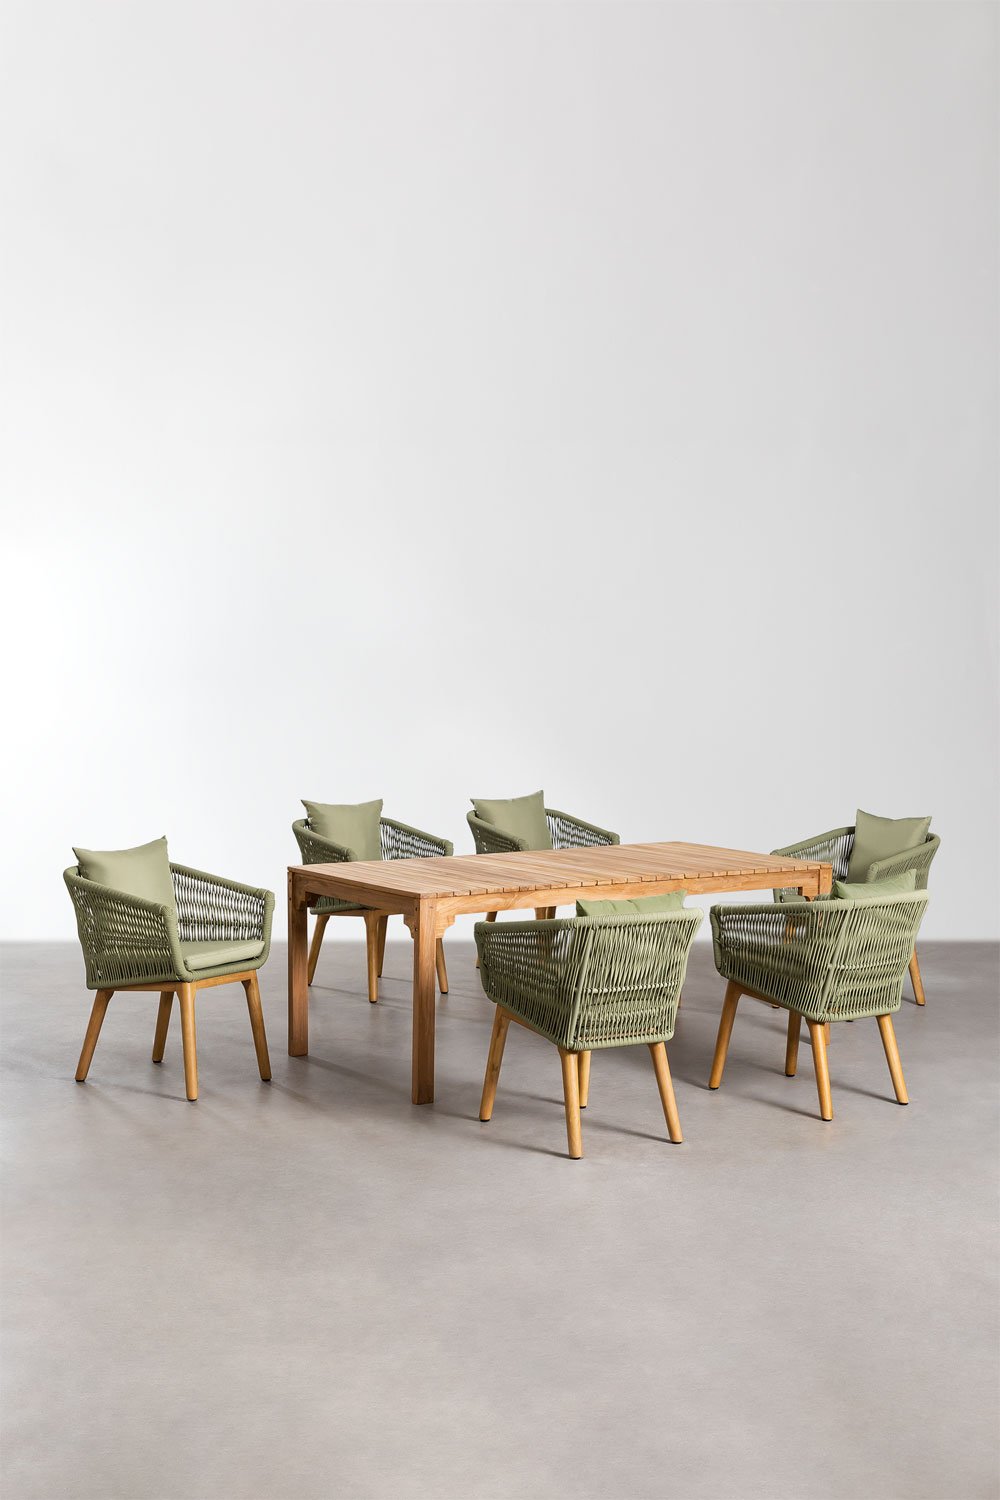 Set van rechthoekige eettafel (200x100 cm) in Donal Wood en 6 Barker eetkamerstoelen, galerij beeld 1